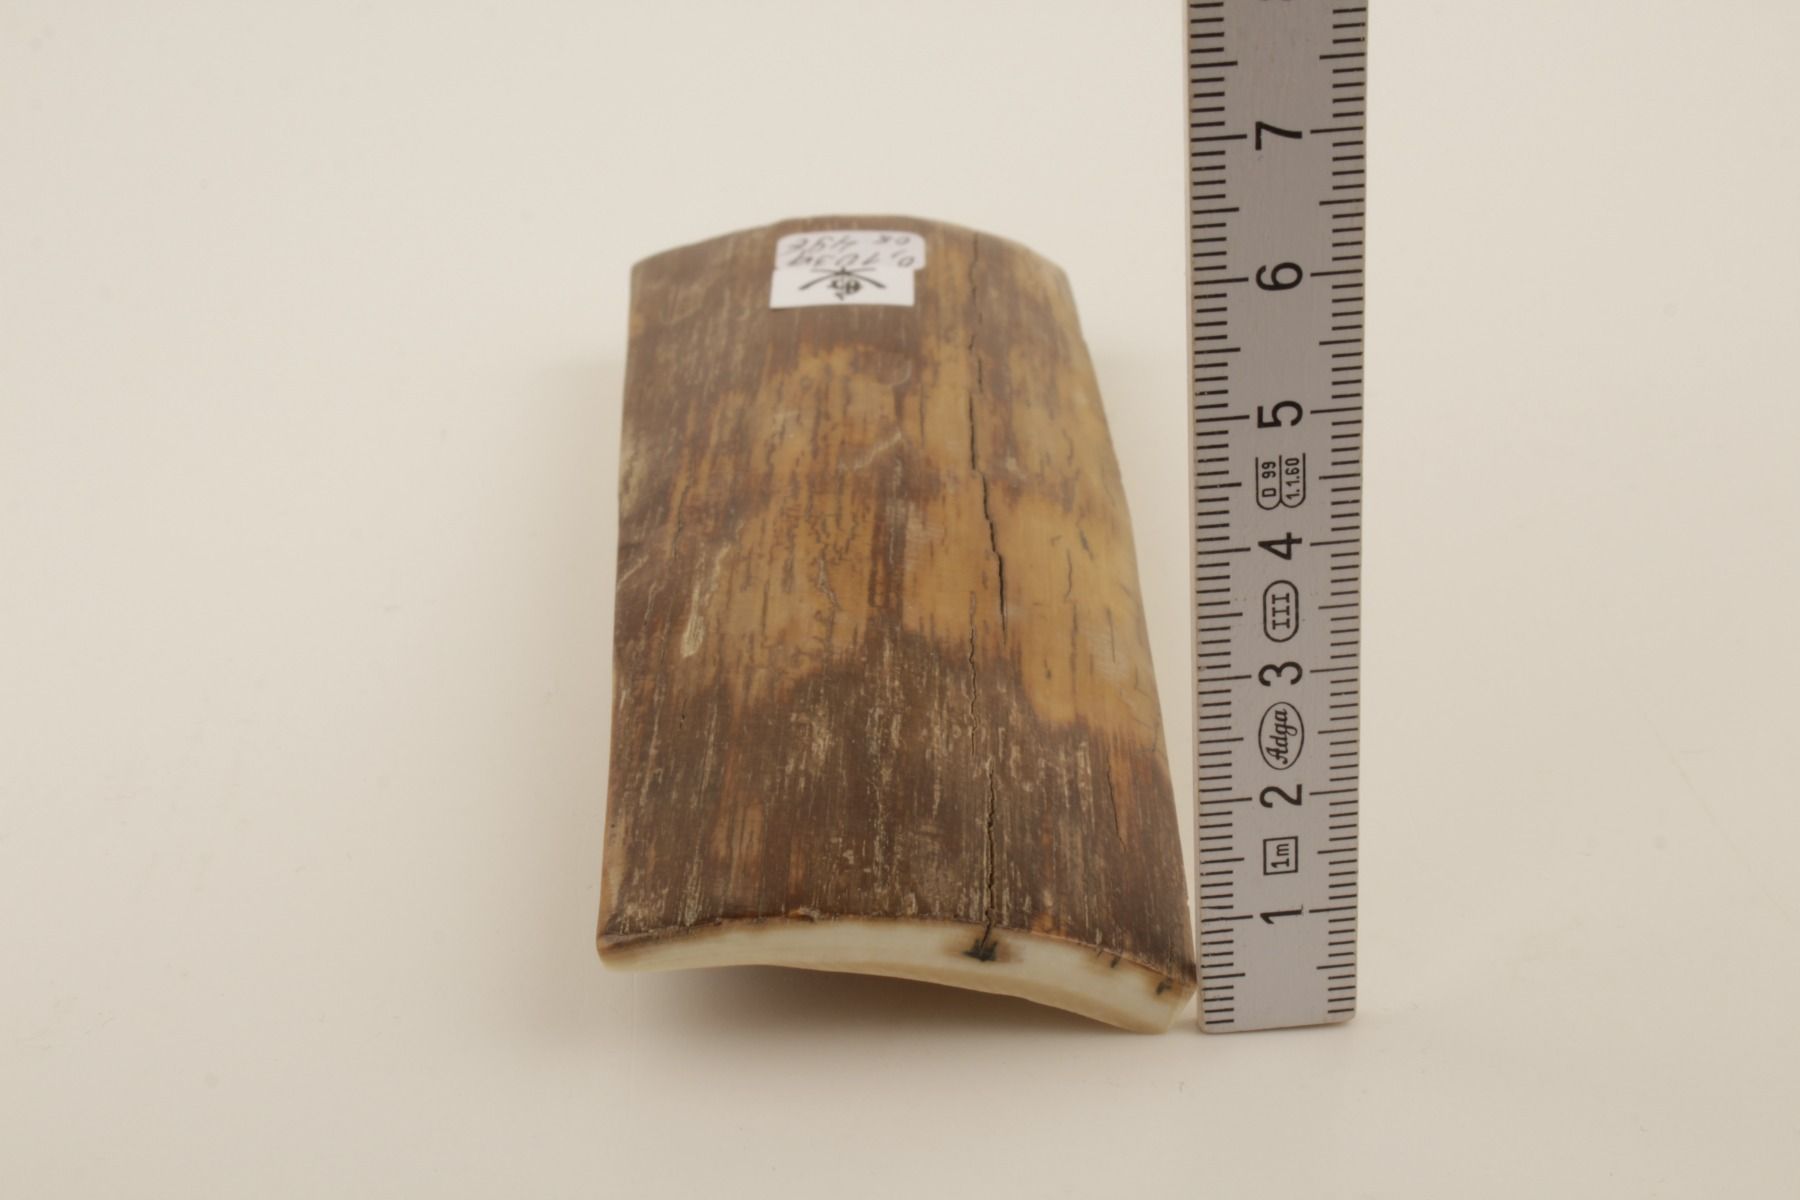 Brown-beige mammoth bark